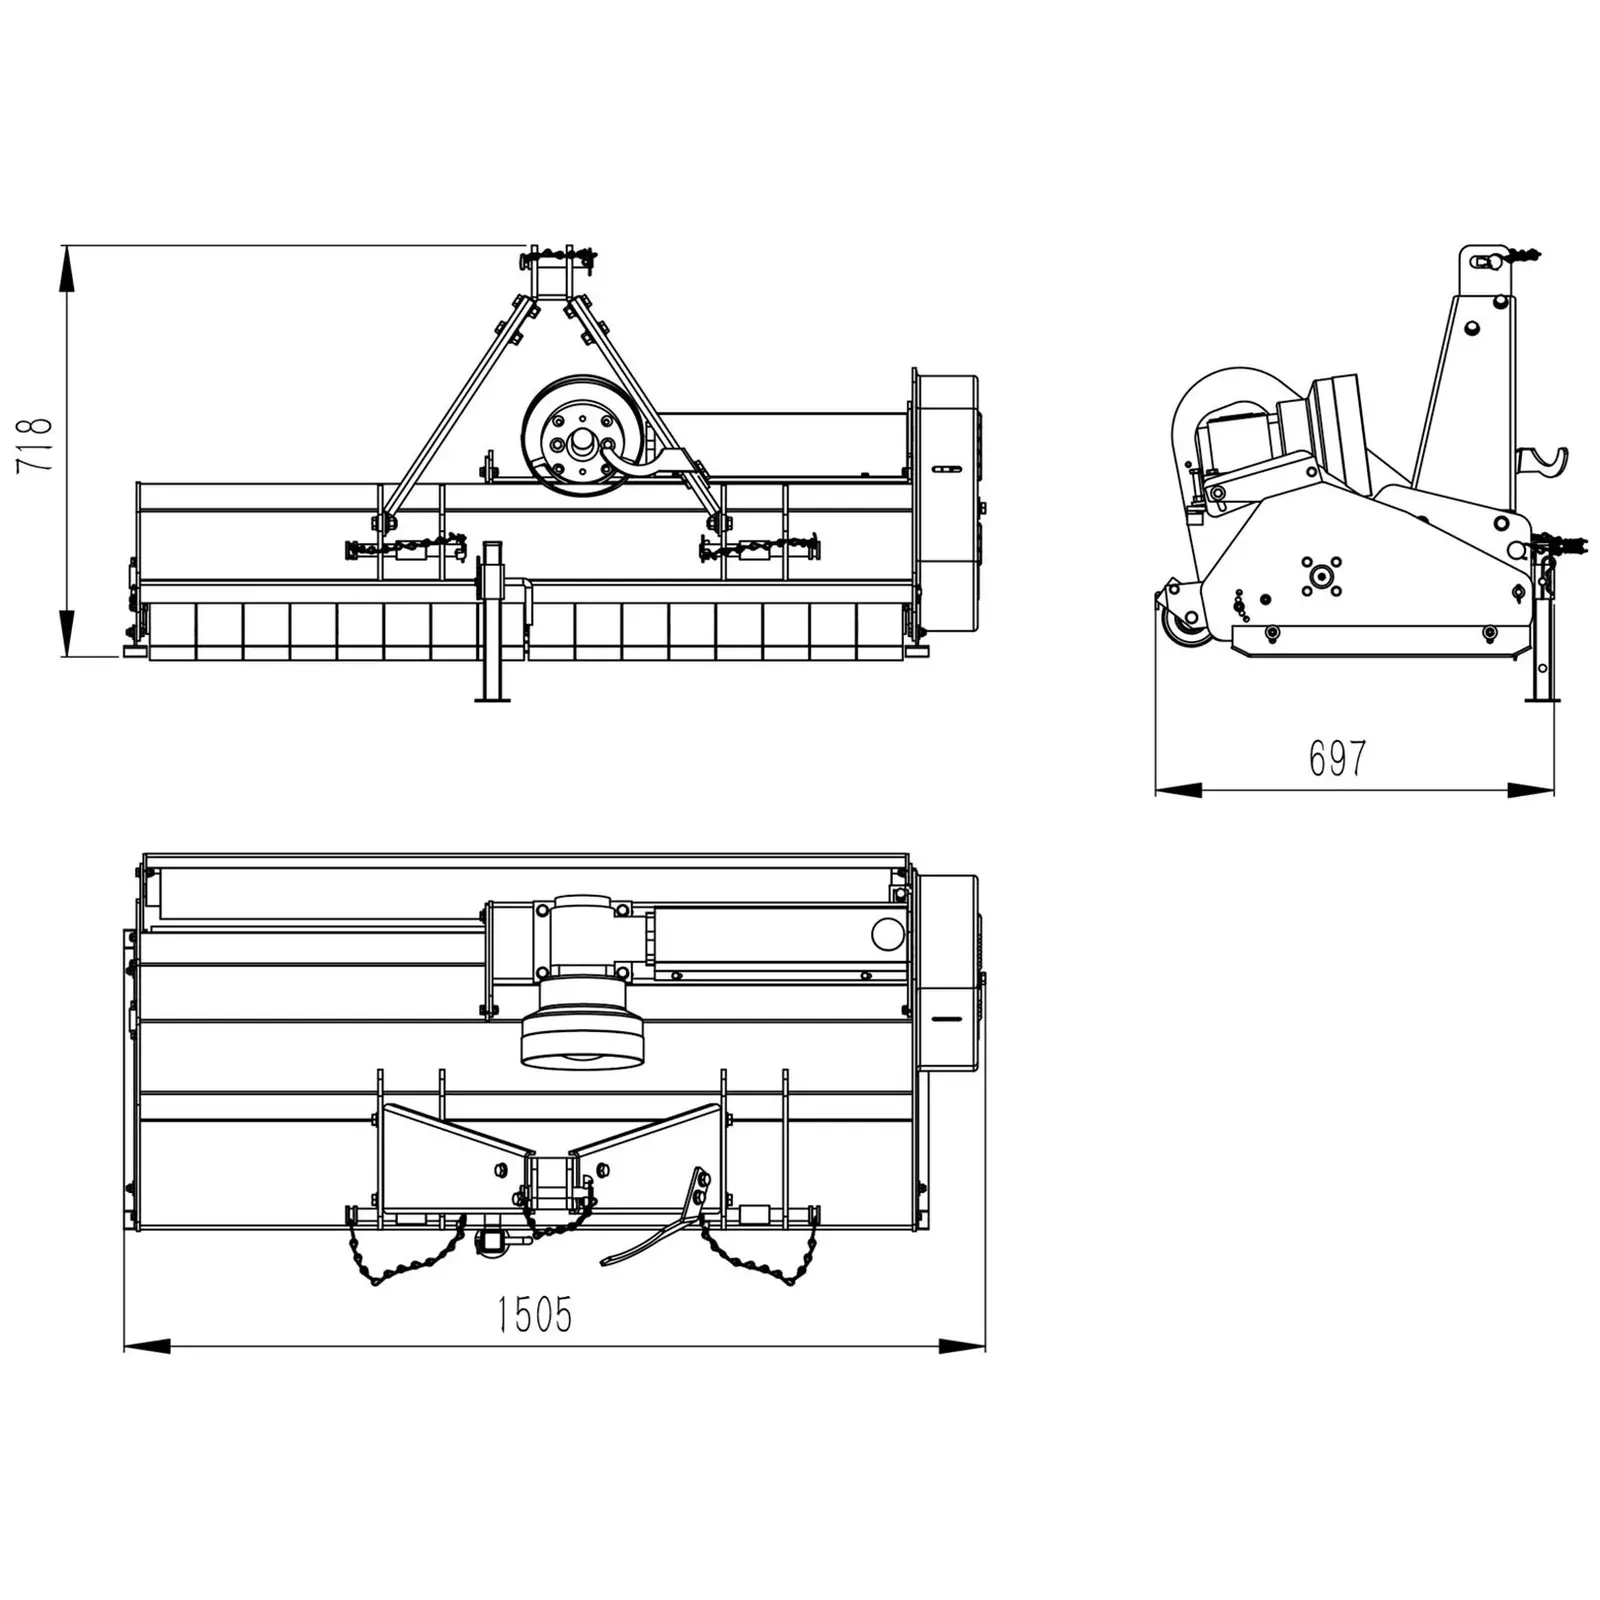 Trinciatrice - Larghezza di lavoro 1350 mm - Attacco a tre punti (cat. I)